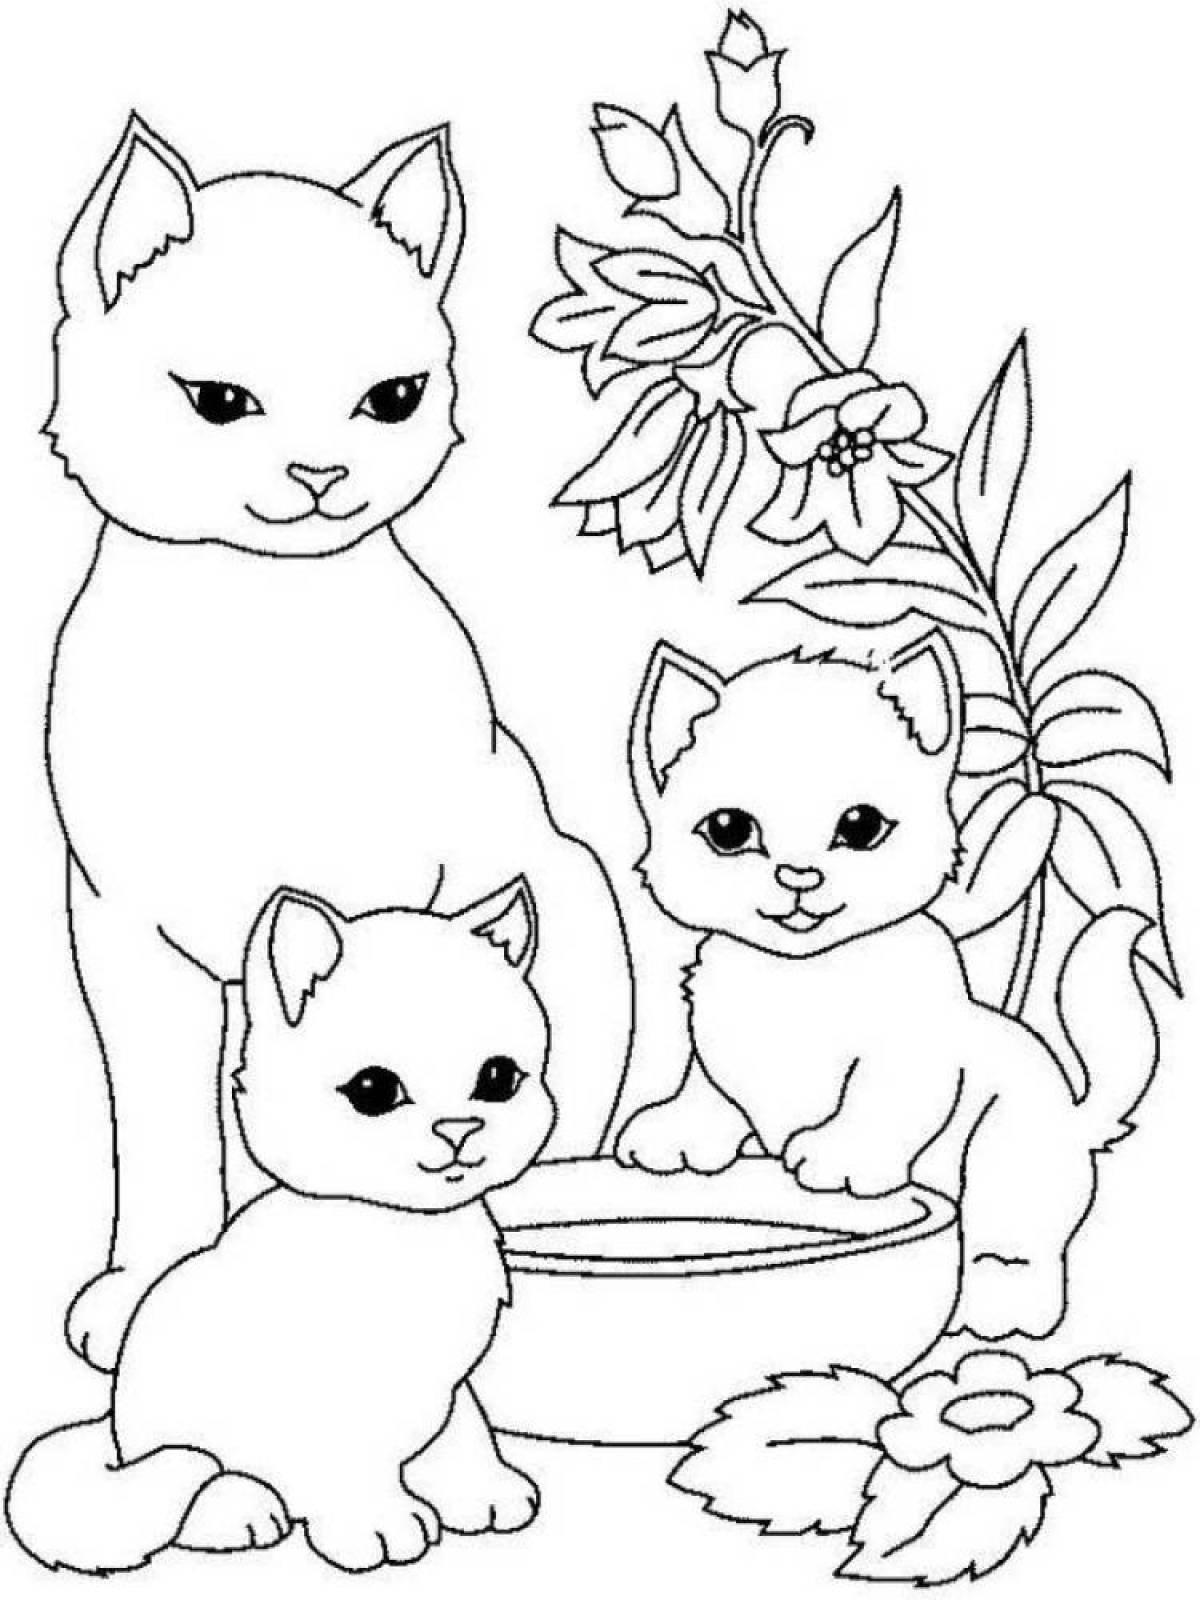 Радостный котенок раскраски для детей